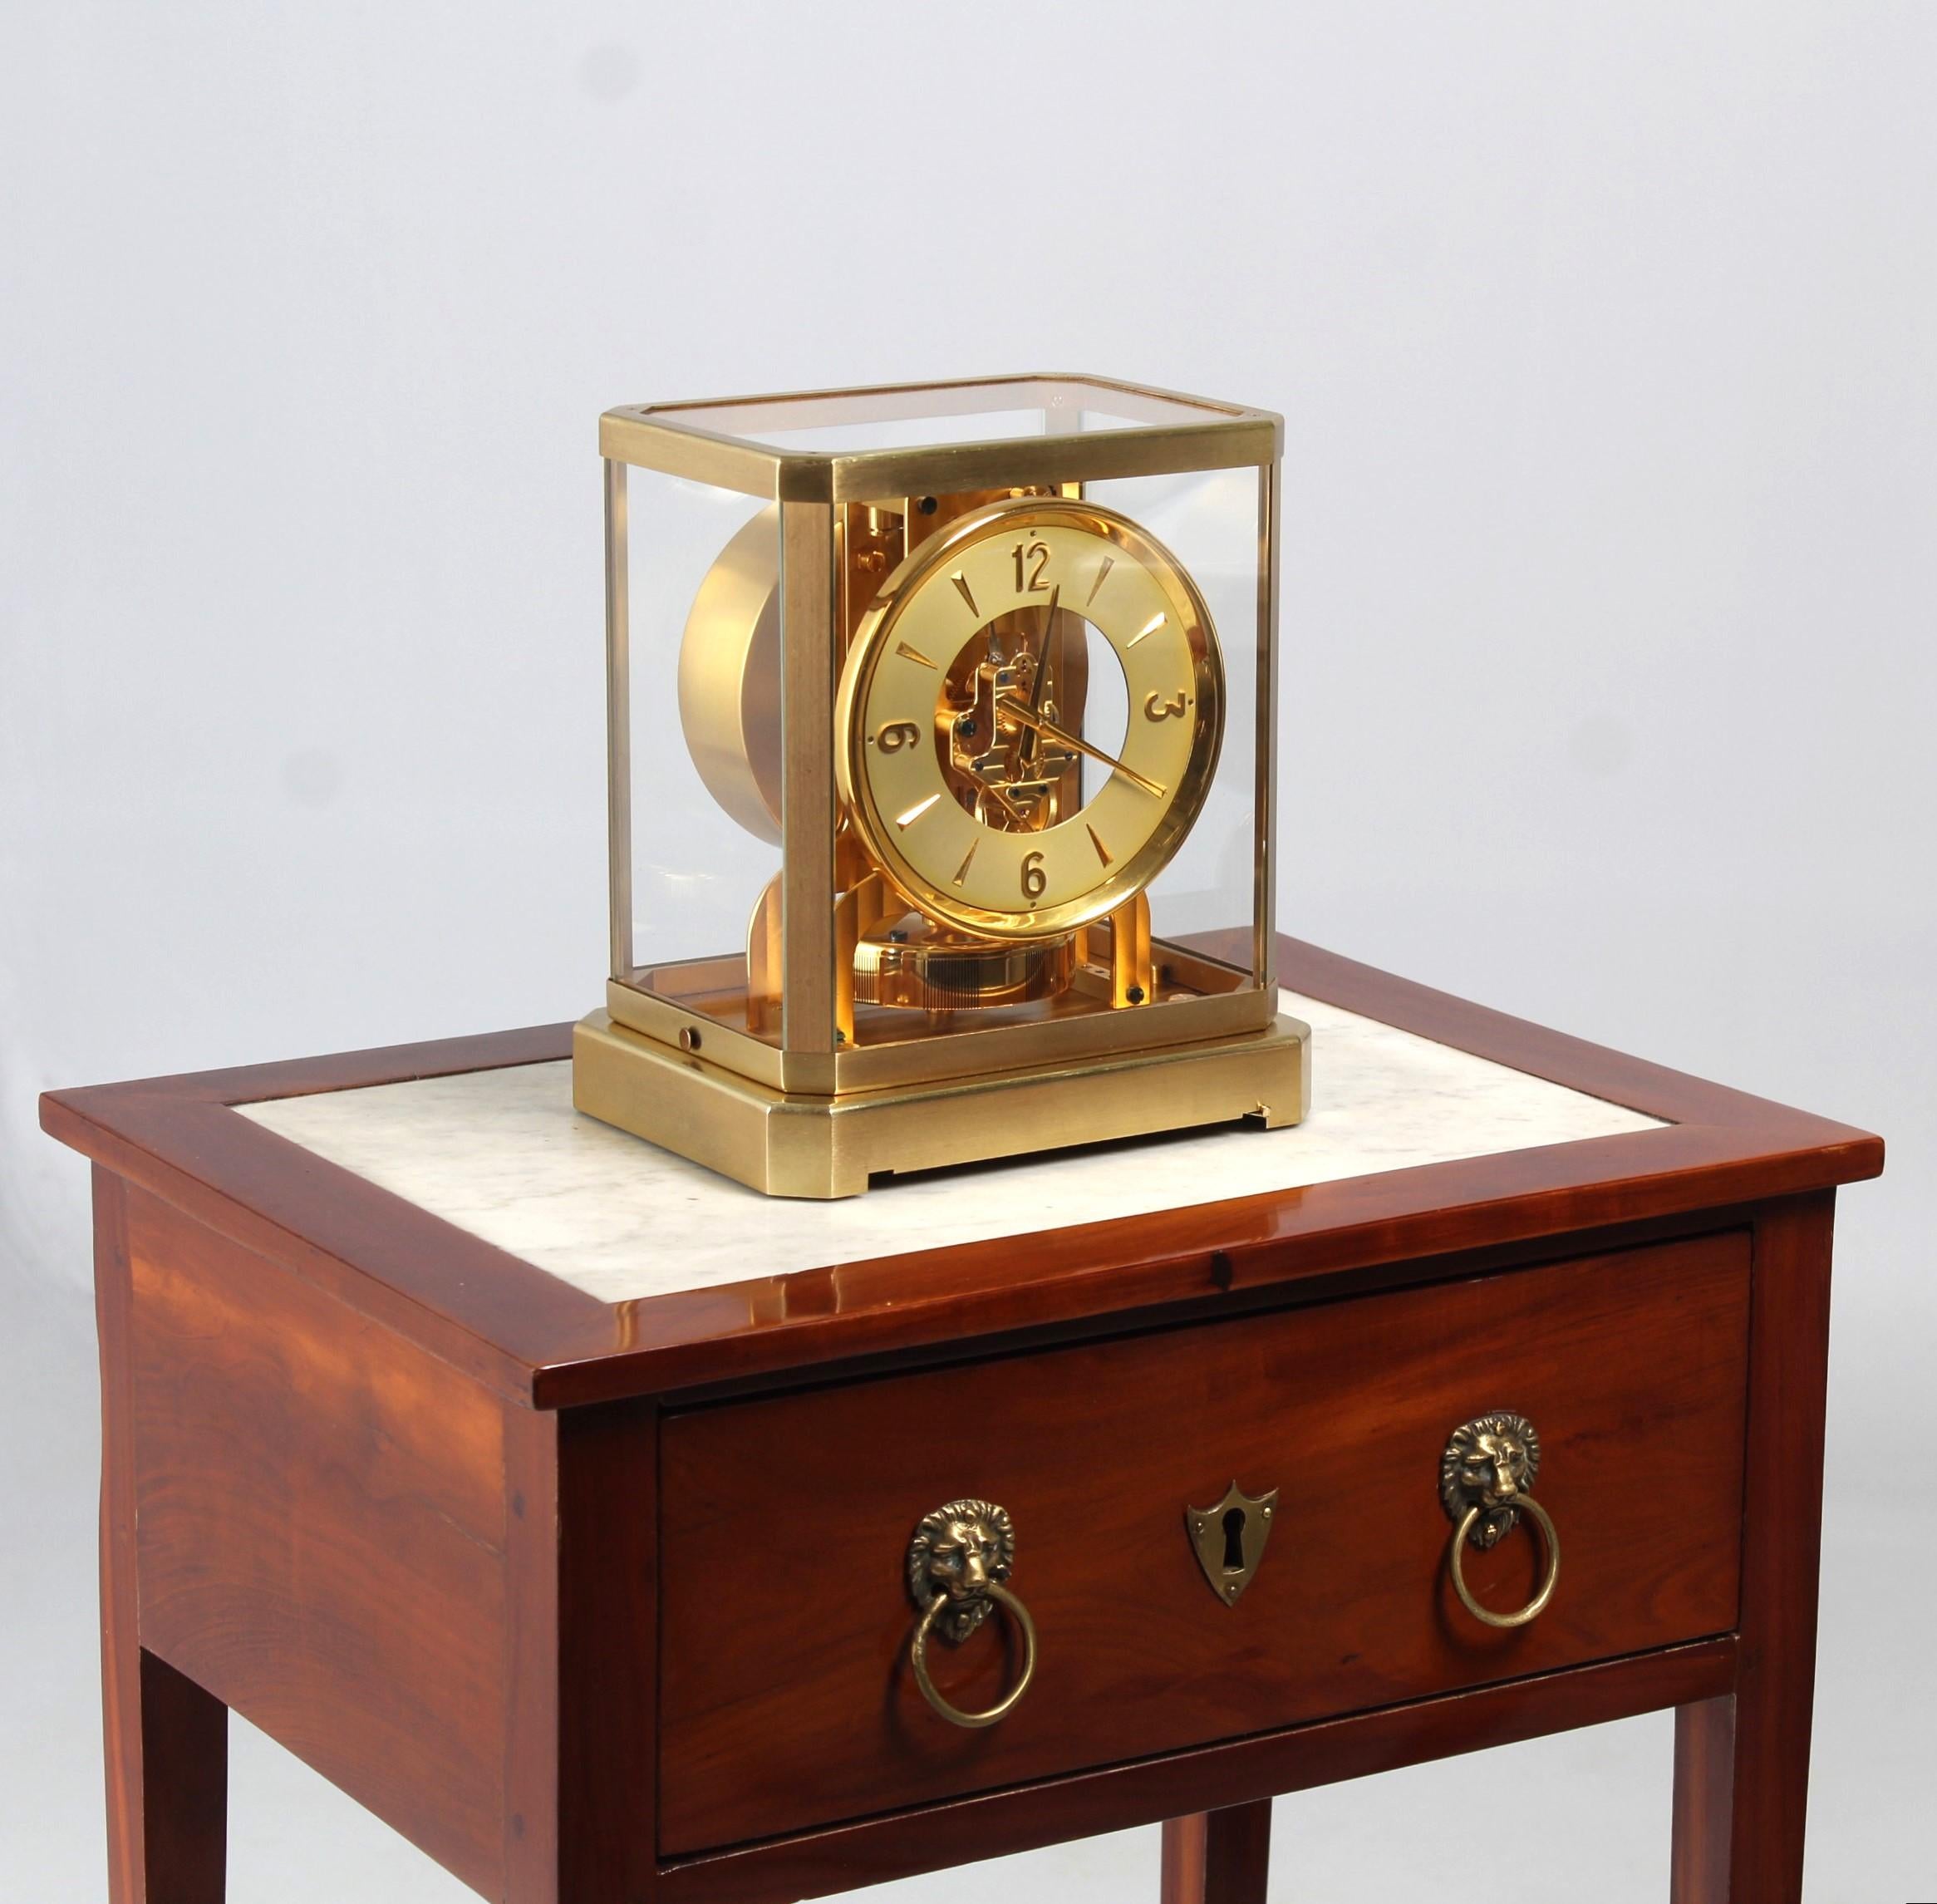 Première horloge Atmos de Jaeger-LeCoultre

Suisse
Laiton, partiellement doré
Année de fabrication 1950

Dimensions : H x L x P : 23,5 x 21 x 16,5 cm : H x L x P : 23,5 x 21 x 16,5 cm

Description :
Atmos II dans un boîtier brossé mat. Vis bleuies,